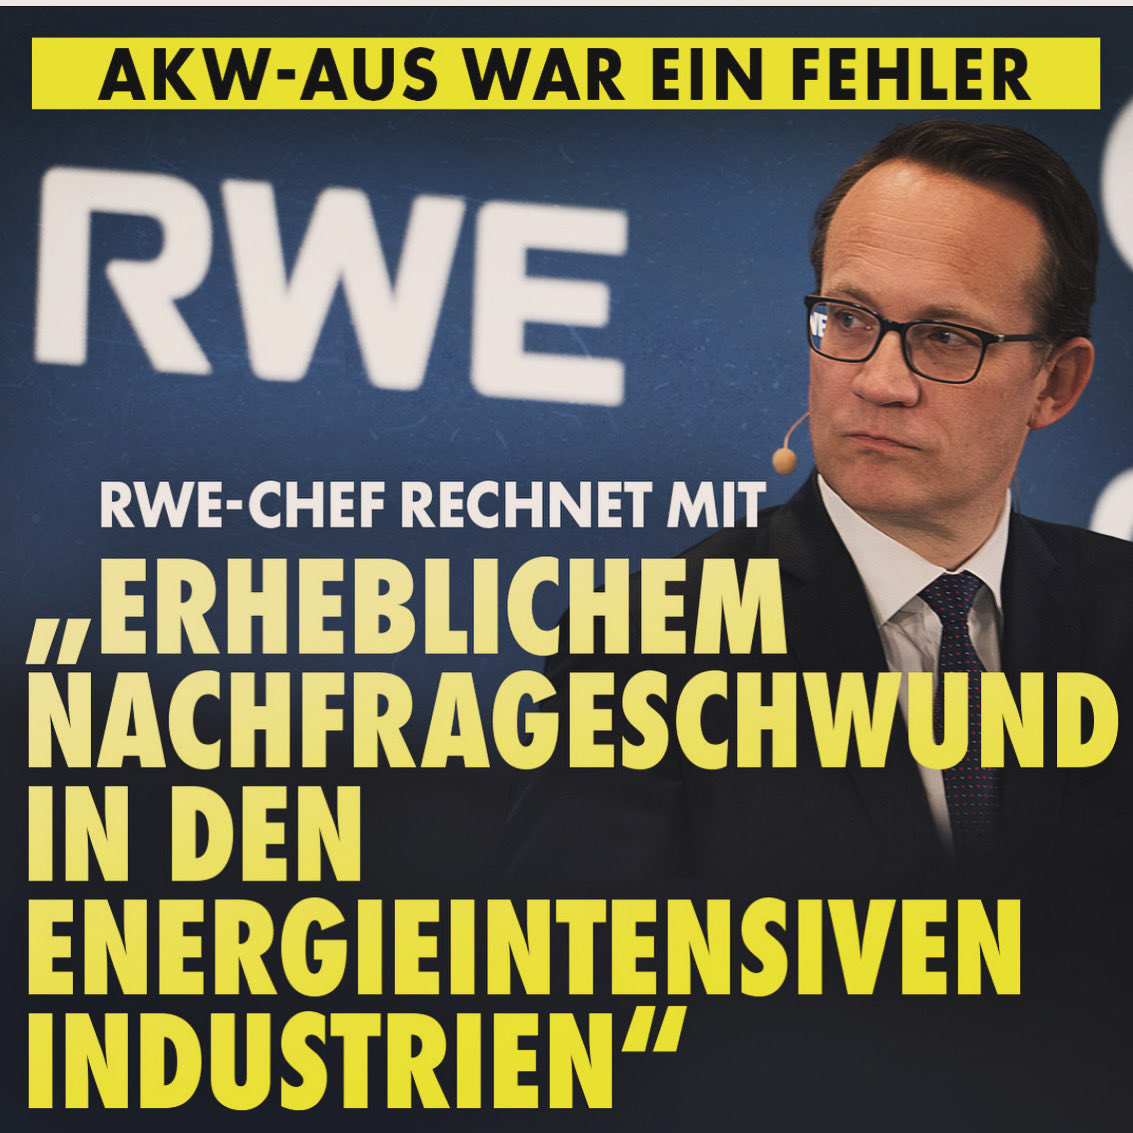 RWE-Chef rechnet mit „erheblichem Nachfrageschwund in den energieintensiven Industrien“
Markus Krebber ist Chef von RWE, dem zweitgrößten Energieversorger Deutschlands. Durch die gestiegenen Preise für Energie sieht er einen Nachfrageschwund in der Industrie kommen. Auch das von